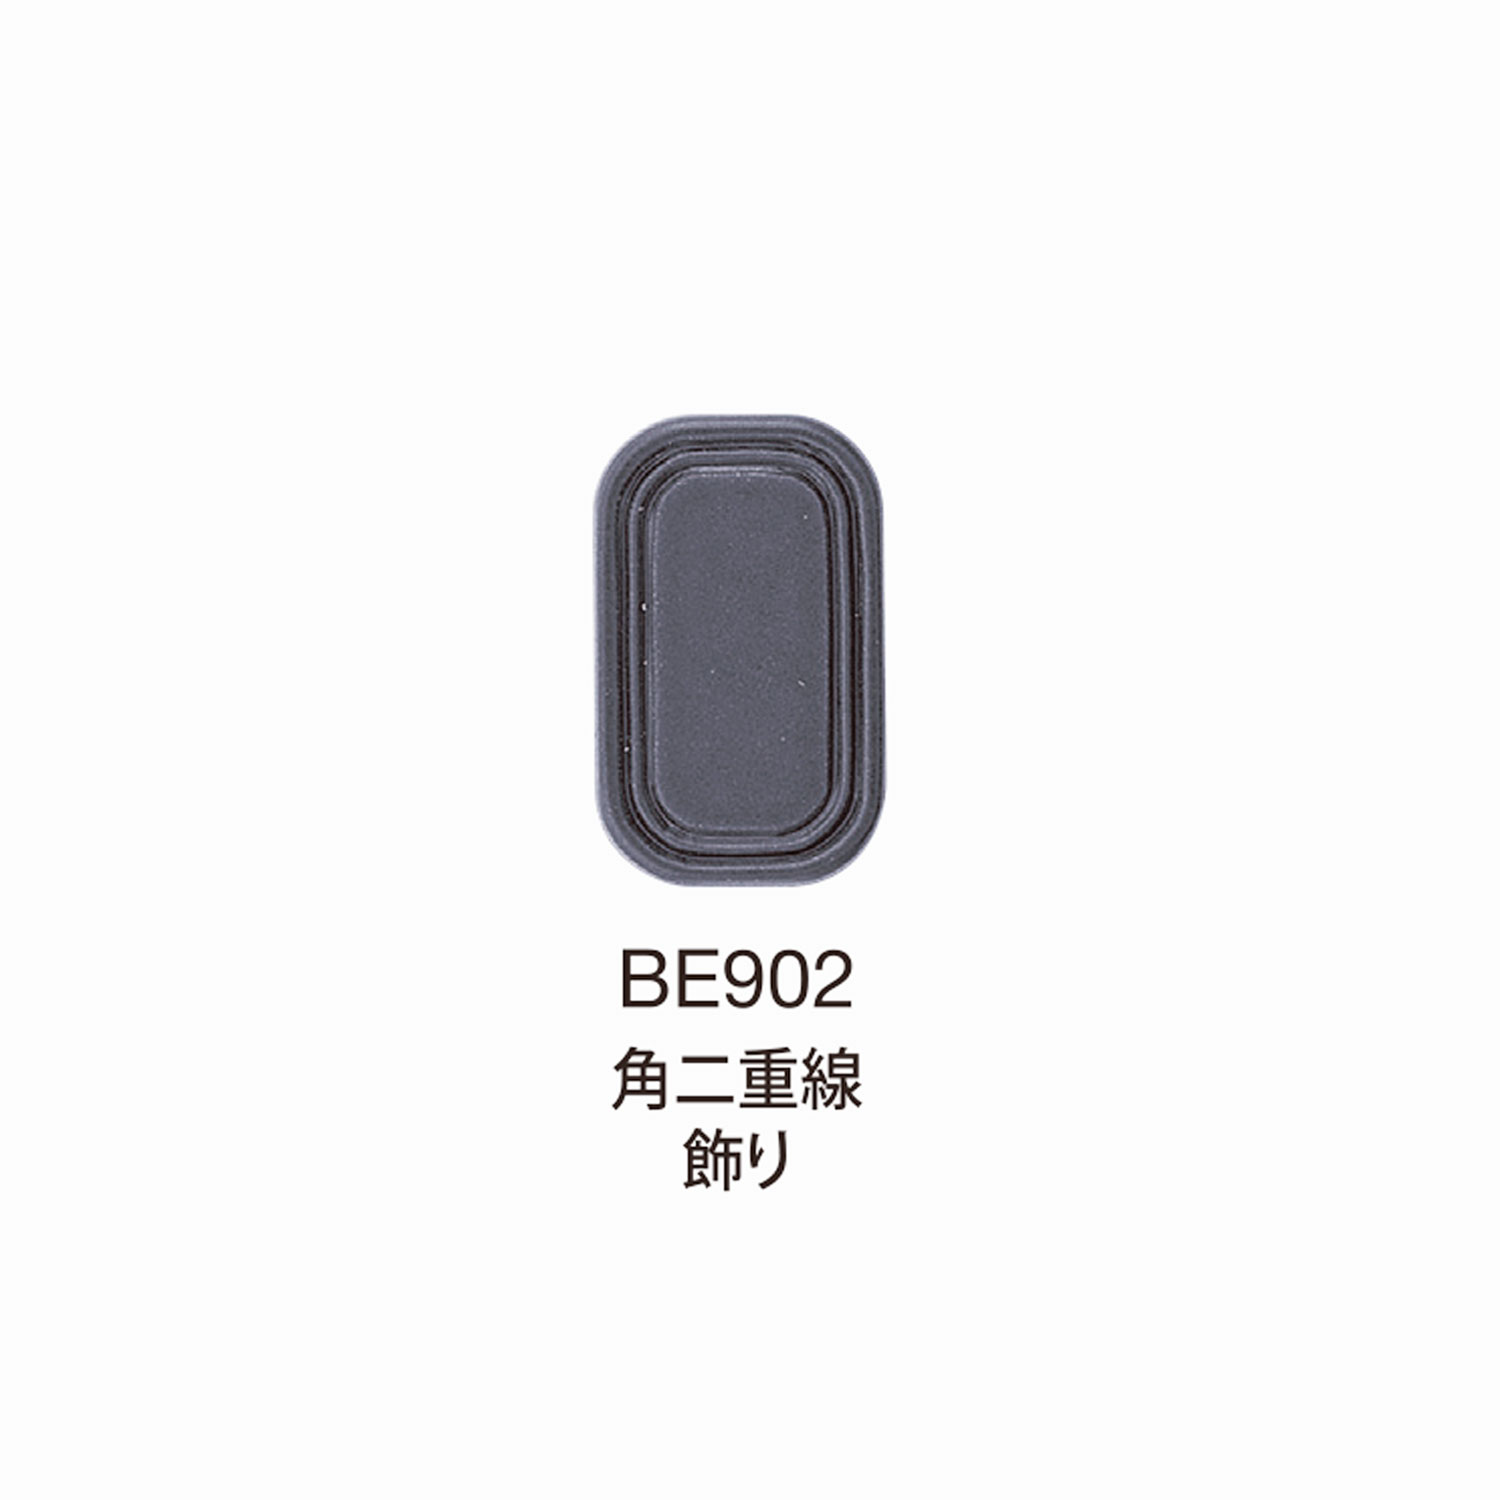 BE902 Decorazione BEREX α Top Hardware Ad Angolo A Doppia Linea[Fibbie E Anello] Morito